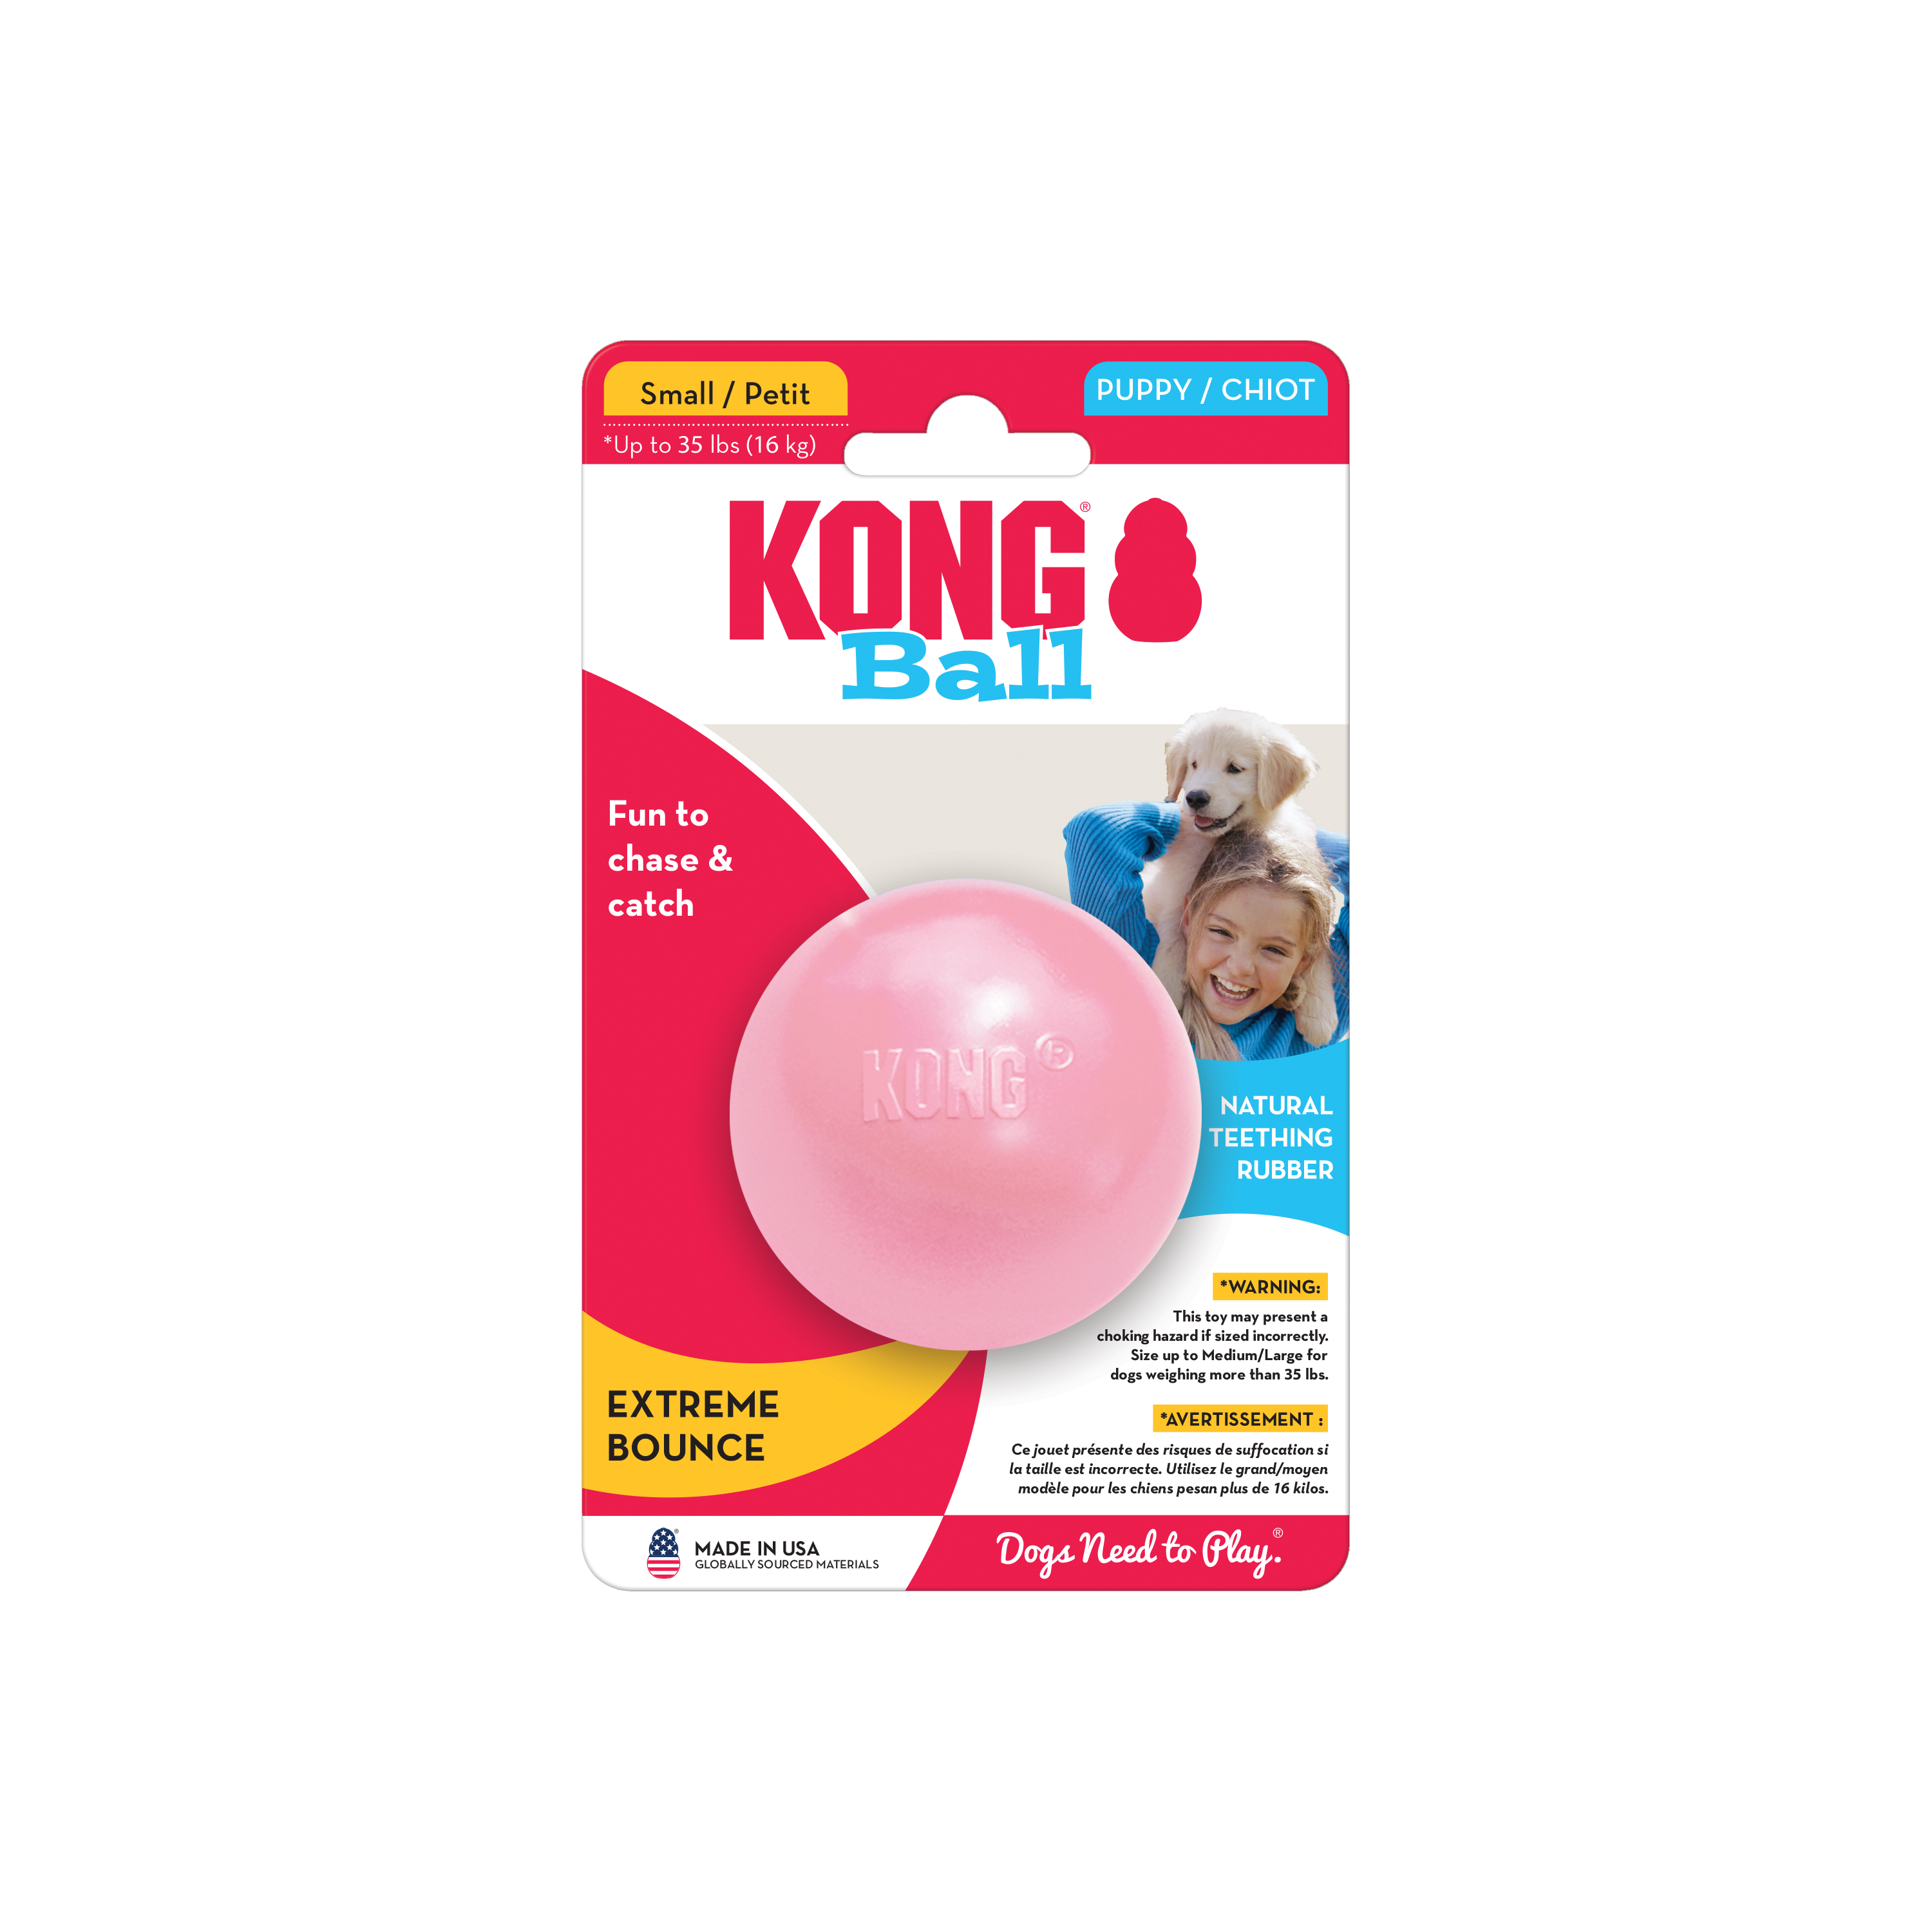 KONG Welpenball mit Loch auf der Verpackung Produktbild